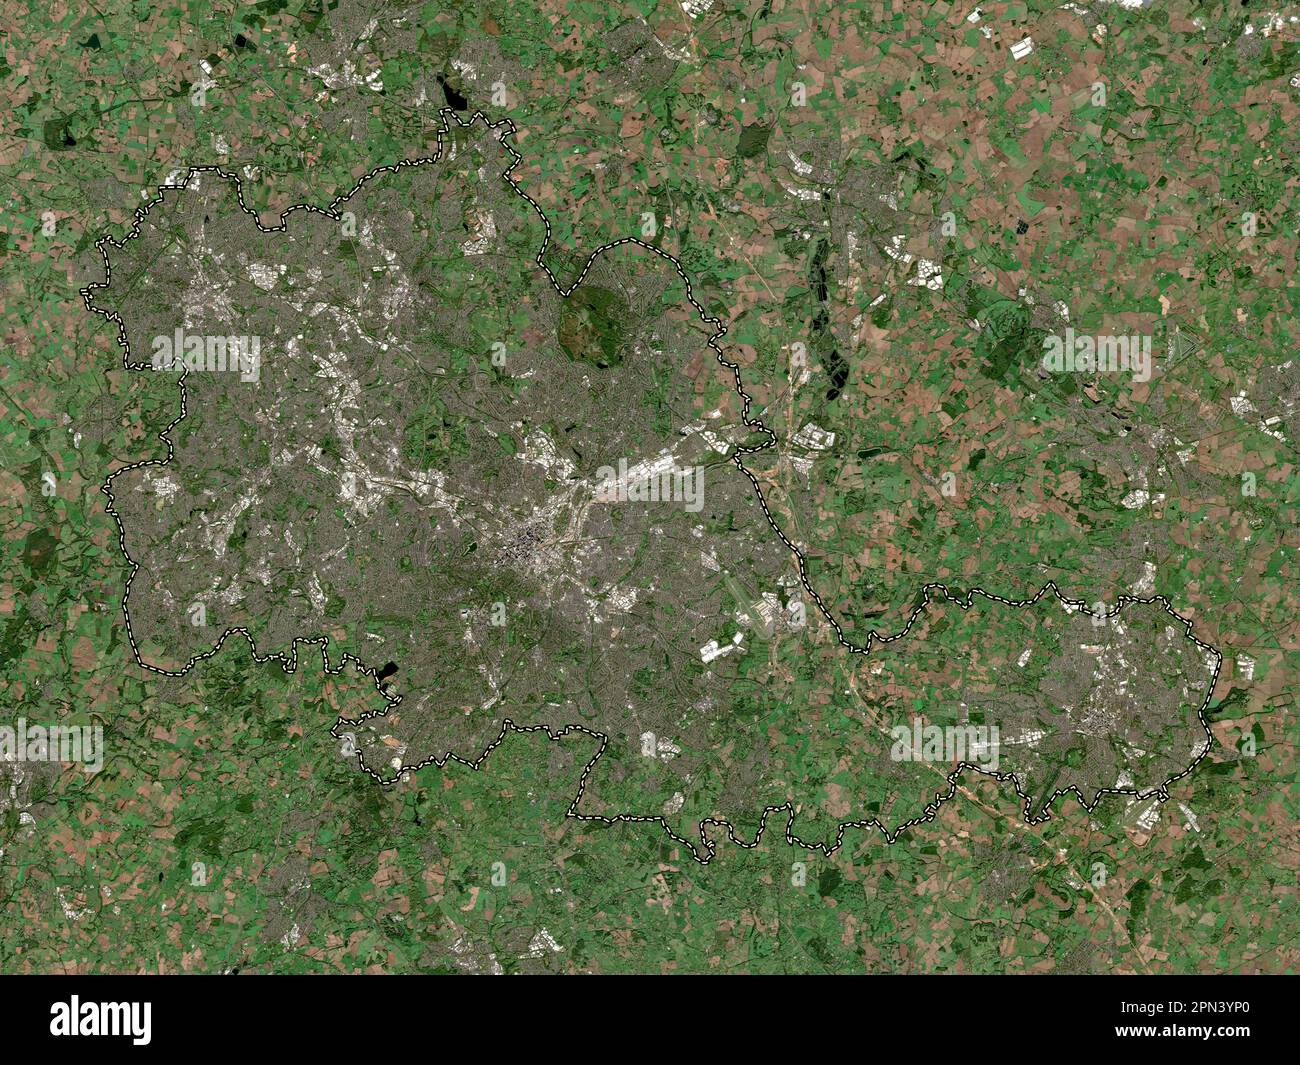 West Midlands Combined Authority, regione dell'Inghilterra - Gran Bretagna. Mappa satellitare a bassa risoluzione Foto Stock